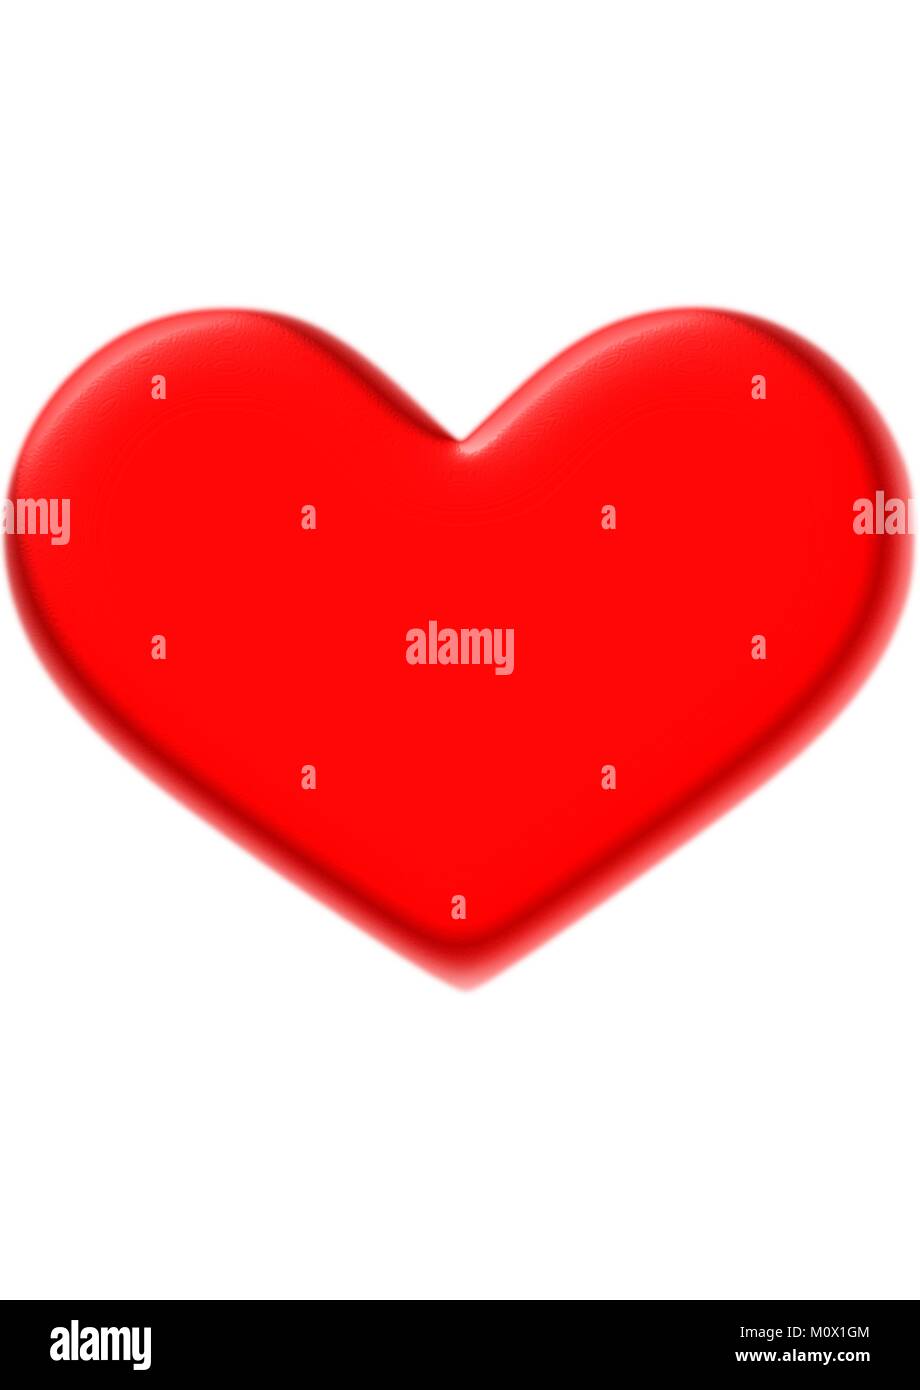 Unico grande cuore rosso su sfondo semplice Immagine e Vettoriale - Alamy